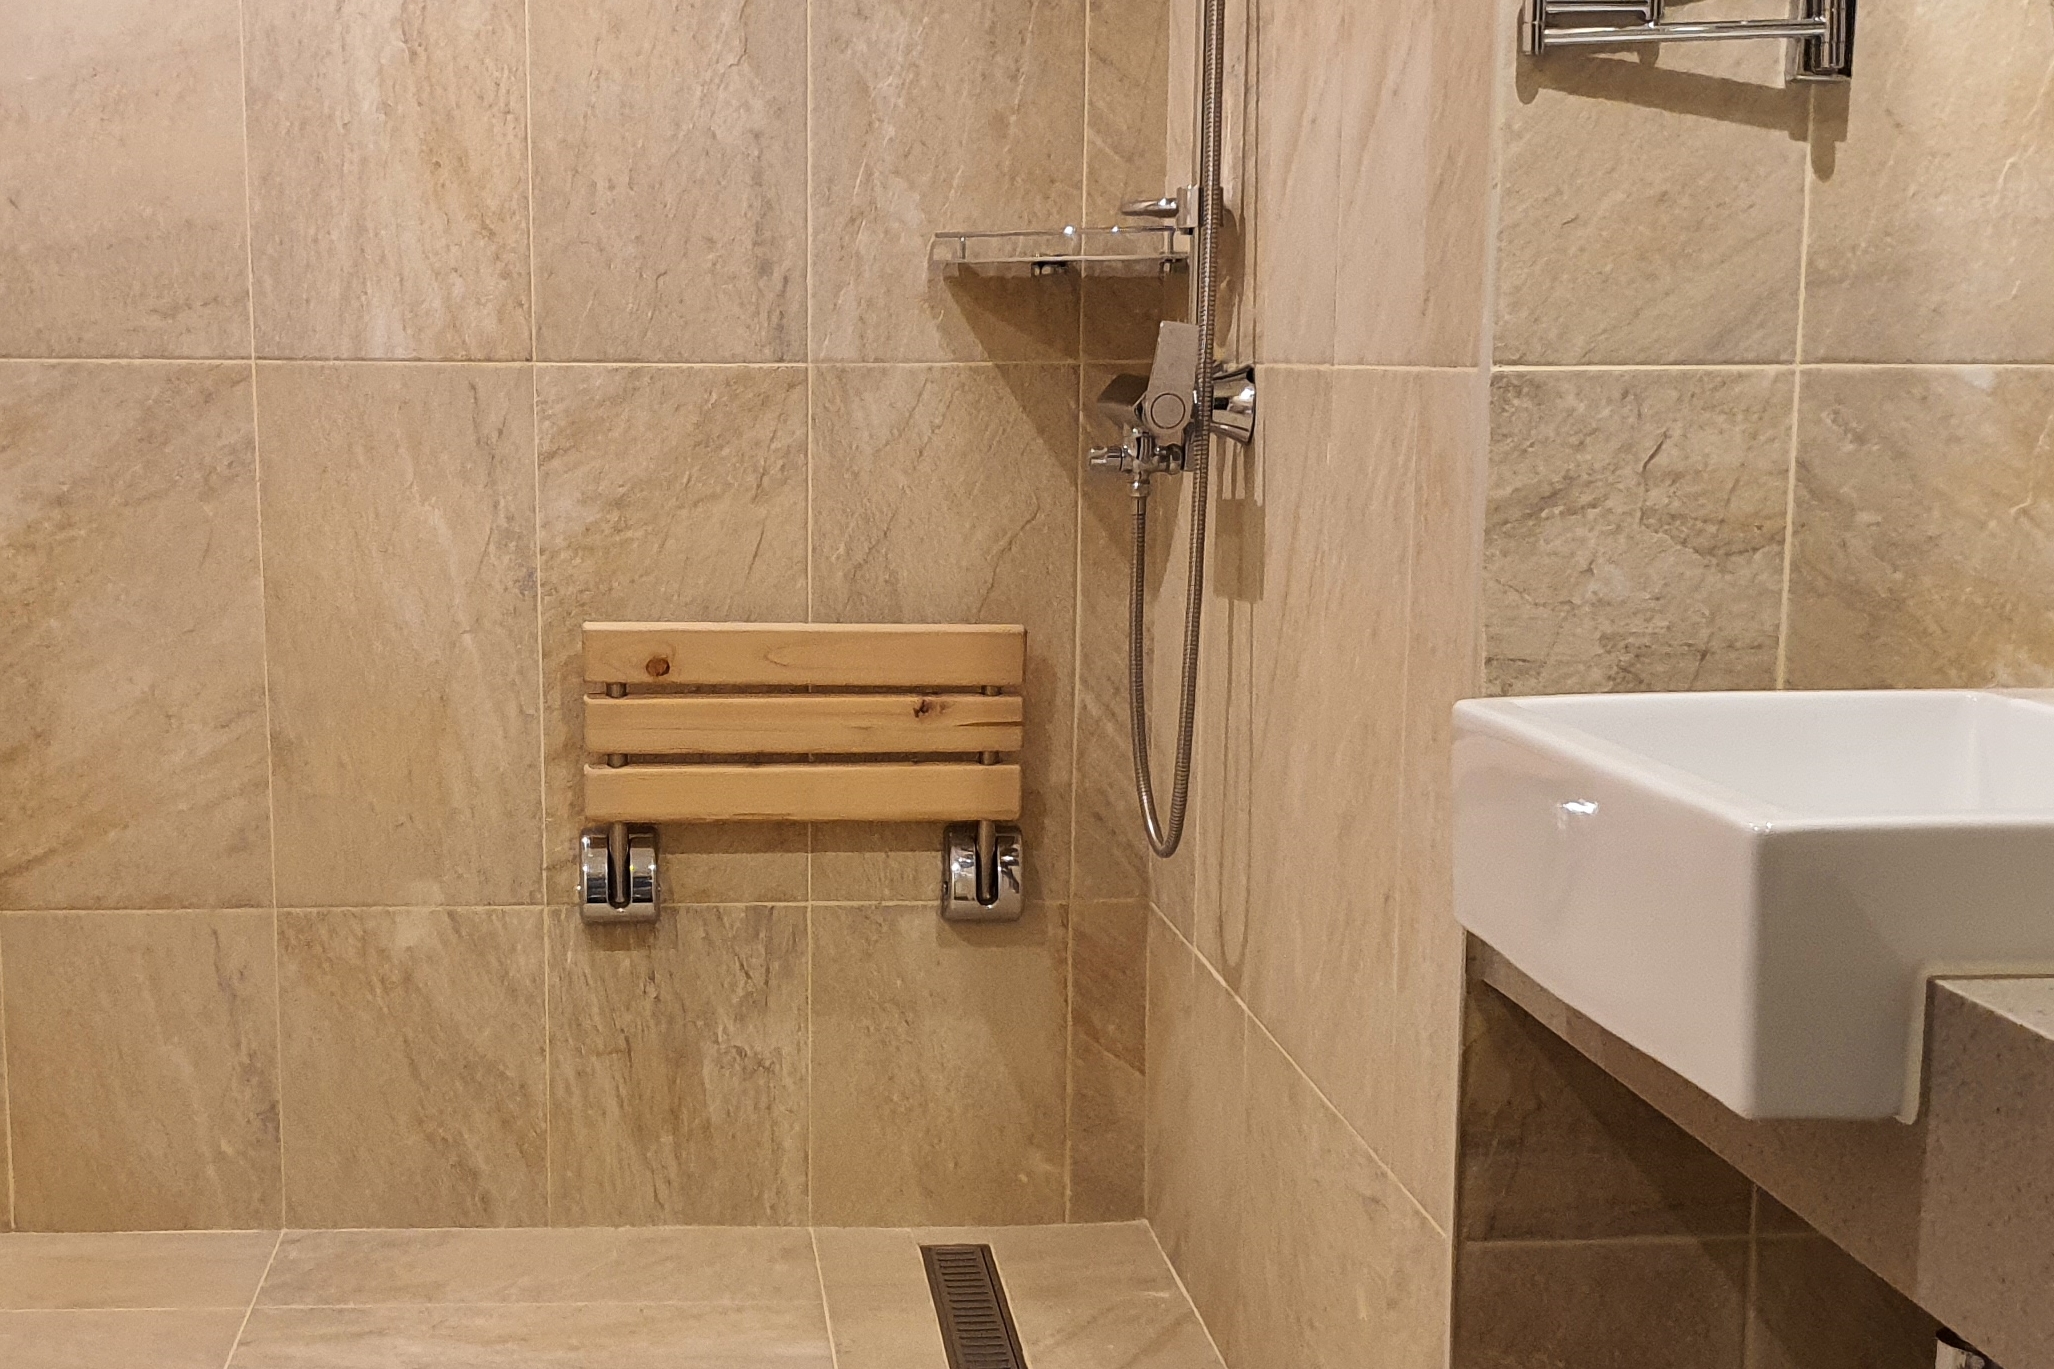 객실 내 화장실0 : 객실 화장실에 설치된 고정식 샤워의자